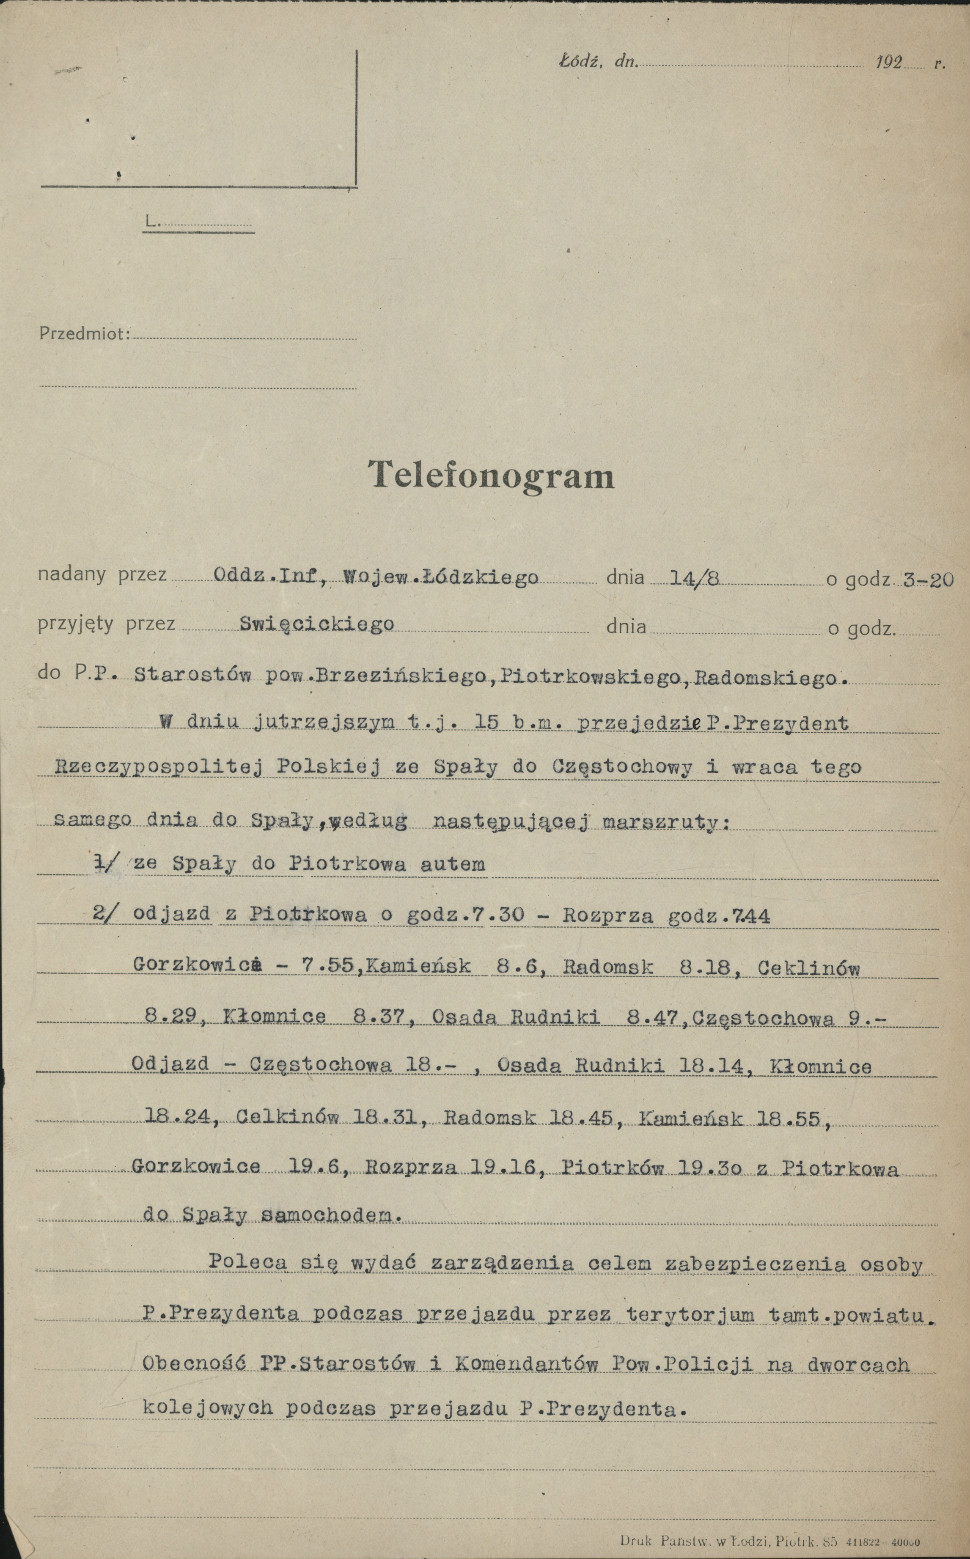 Telefonogram w sprawie przejazdu Prezydenta RP przez Piotrków, 1923 r.